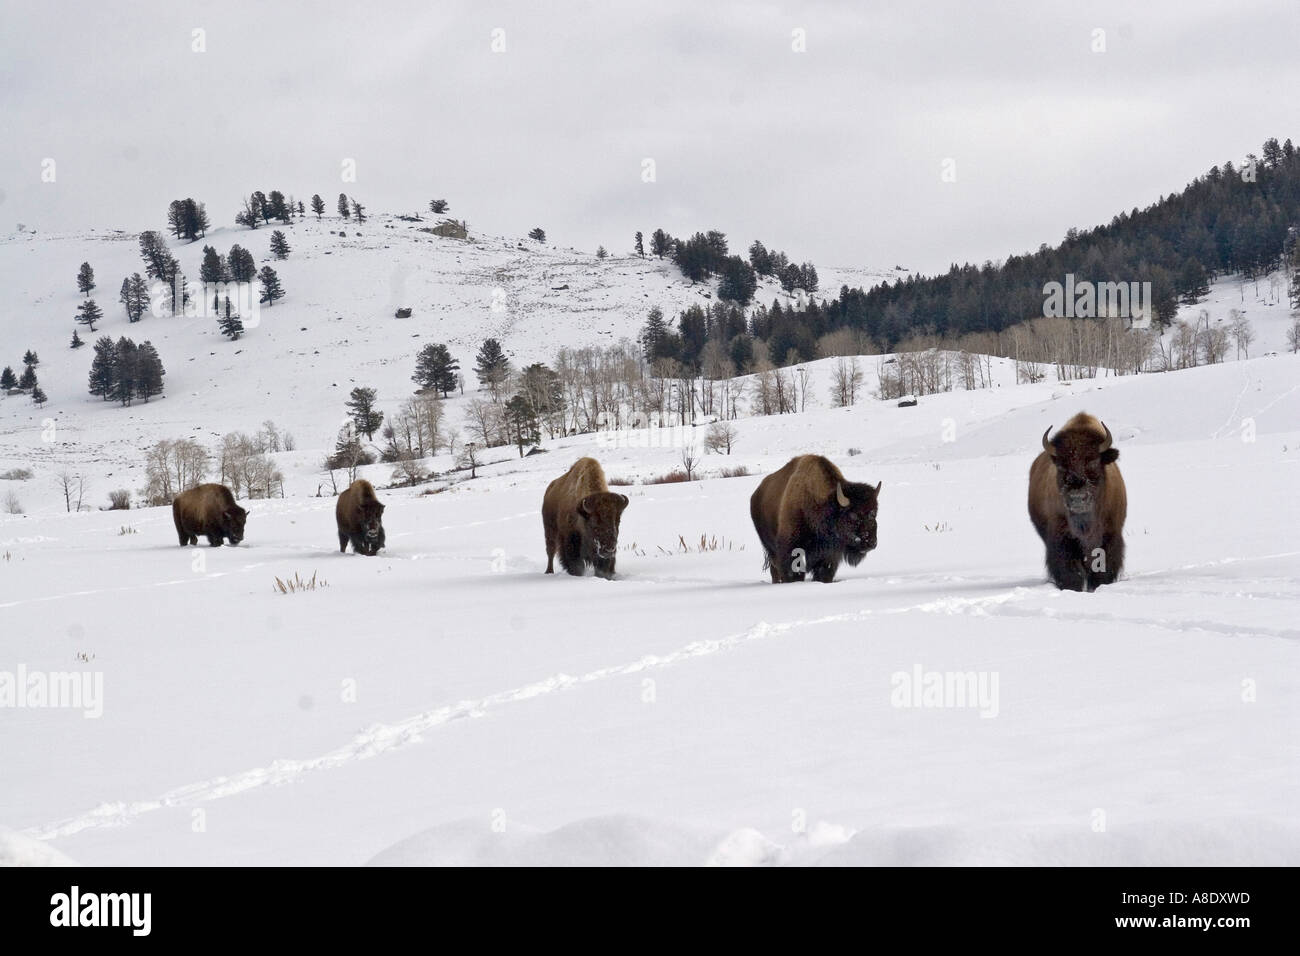 Bison manada caminando en invierno, la nieve del parque nacional Yellowstone. Foto de stock